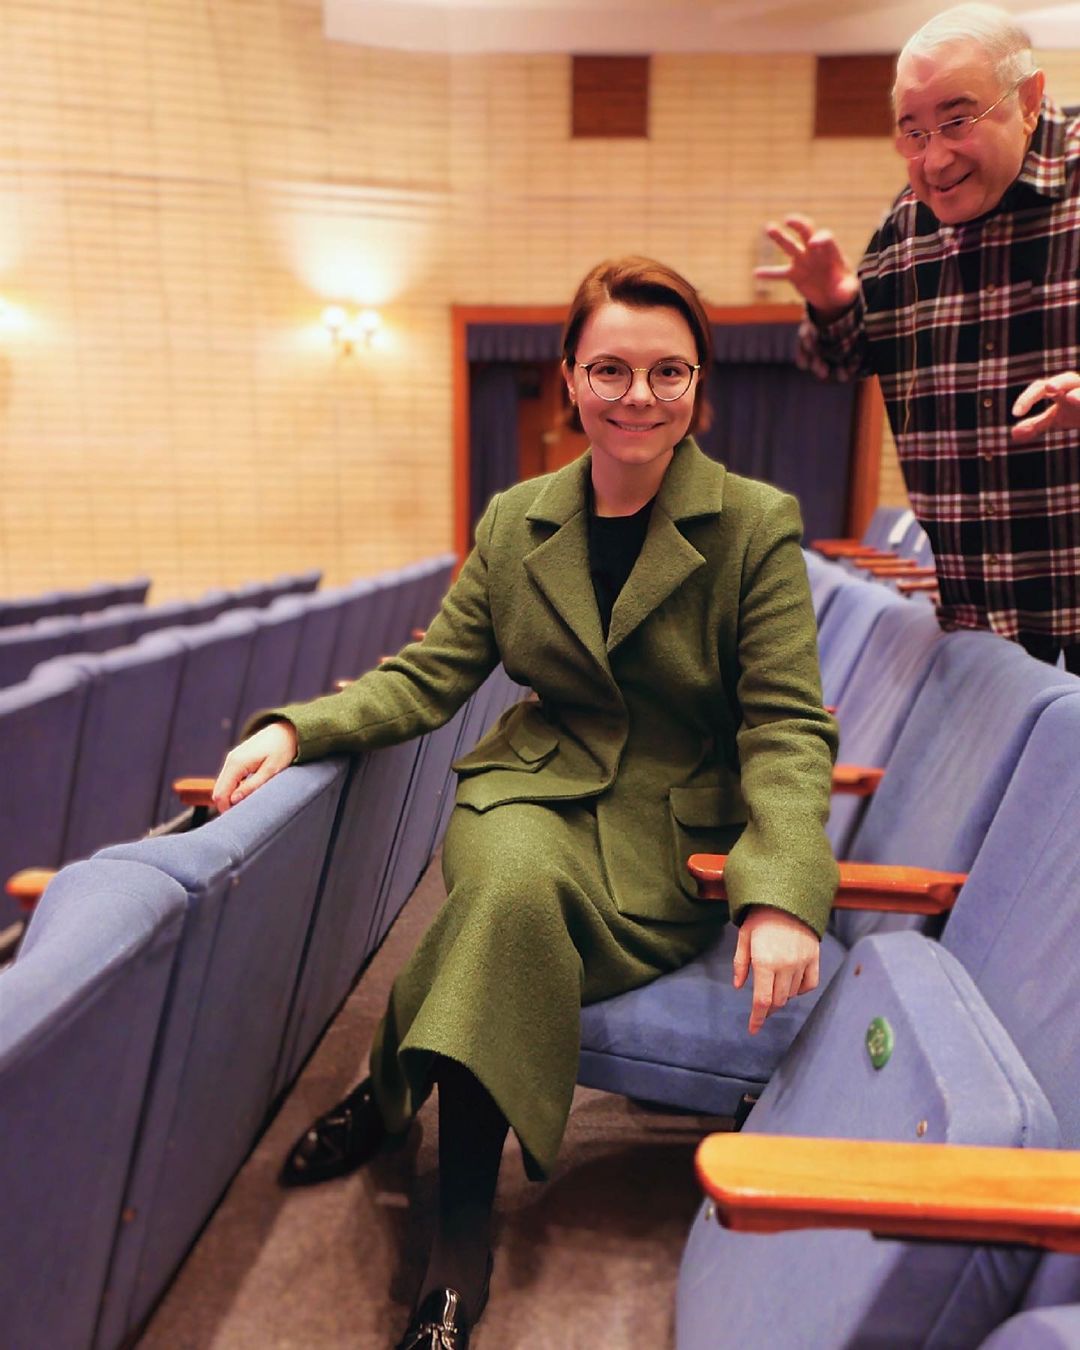 "Как вы похожи!": Татьяна Брухунова поделилась забавным кадром с Евгением Петросяном